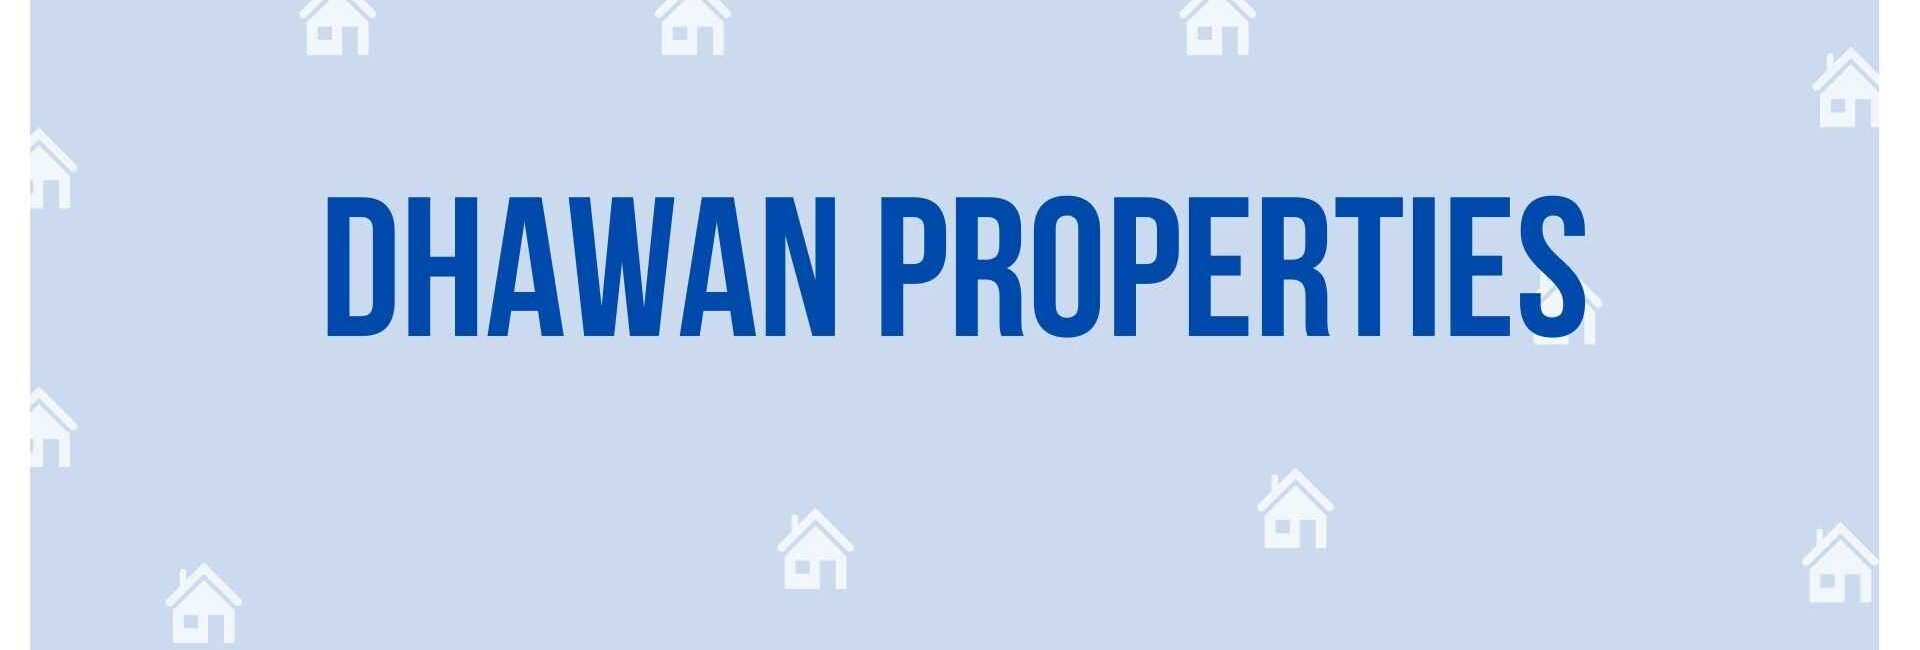 Dhawan Properties - Property Dealer in Noida